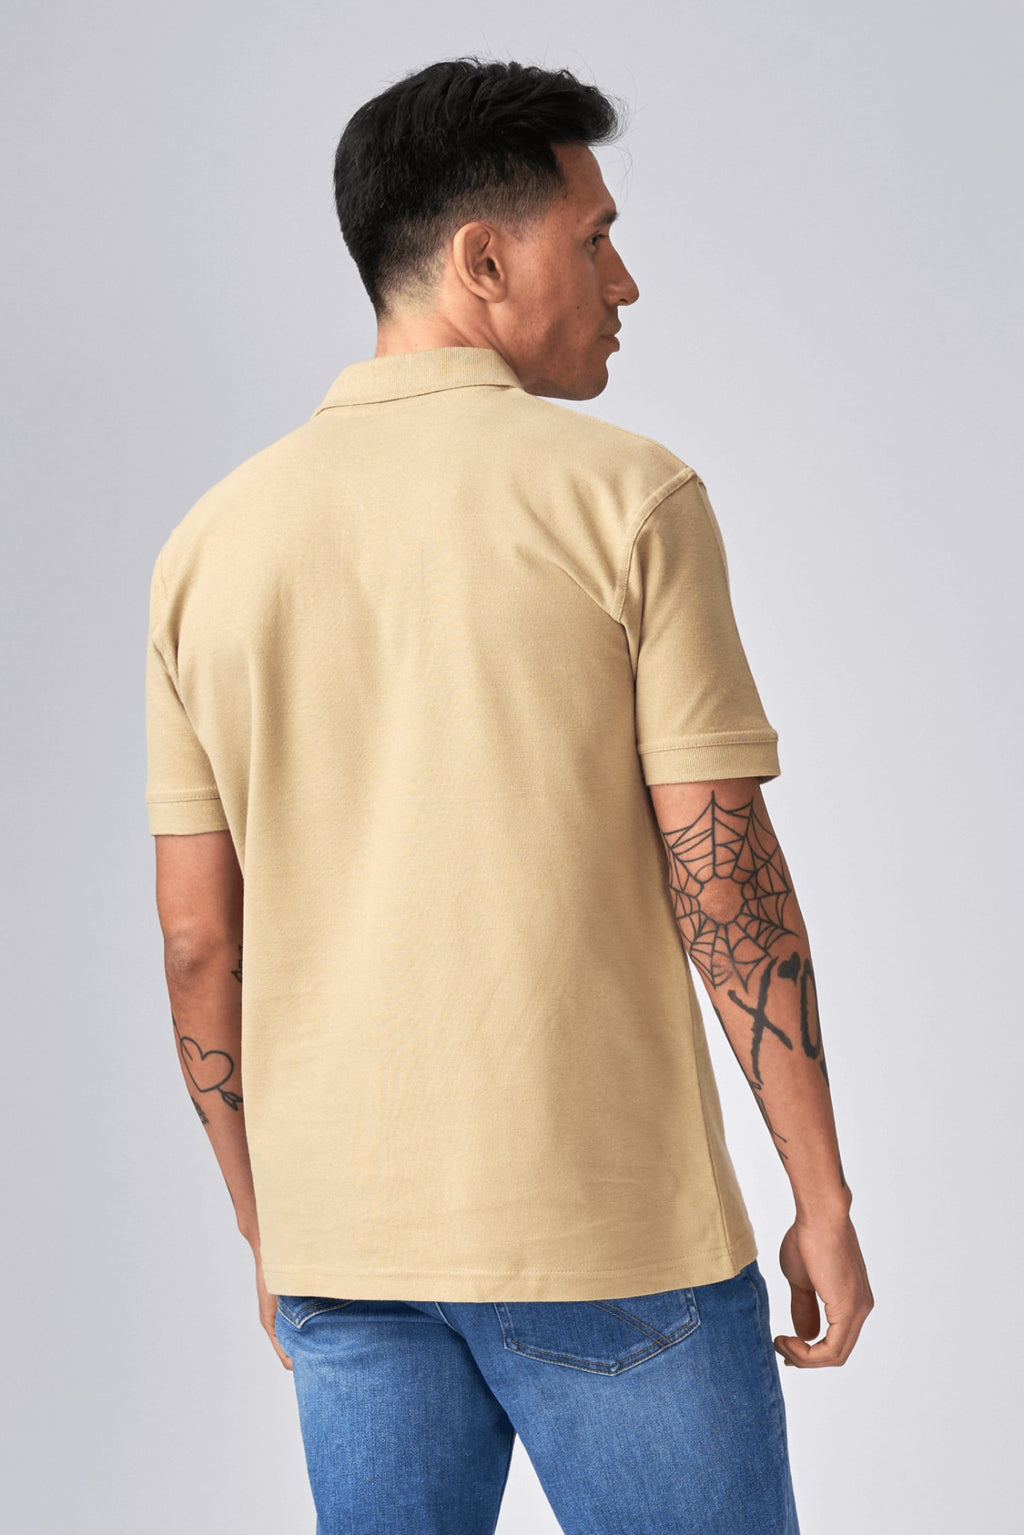 Basic Poloshirt - Khaki